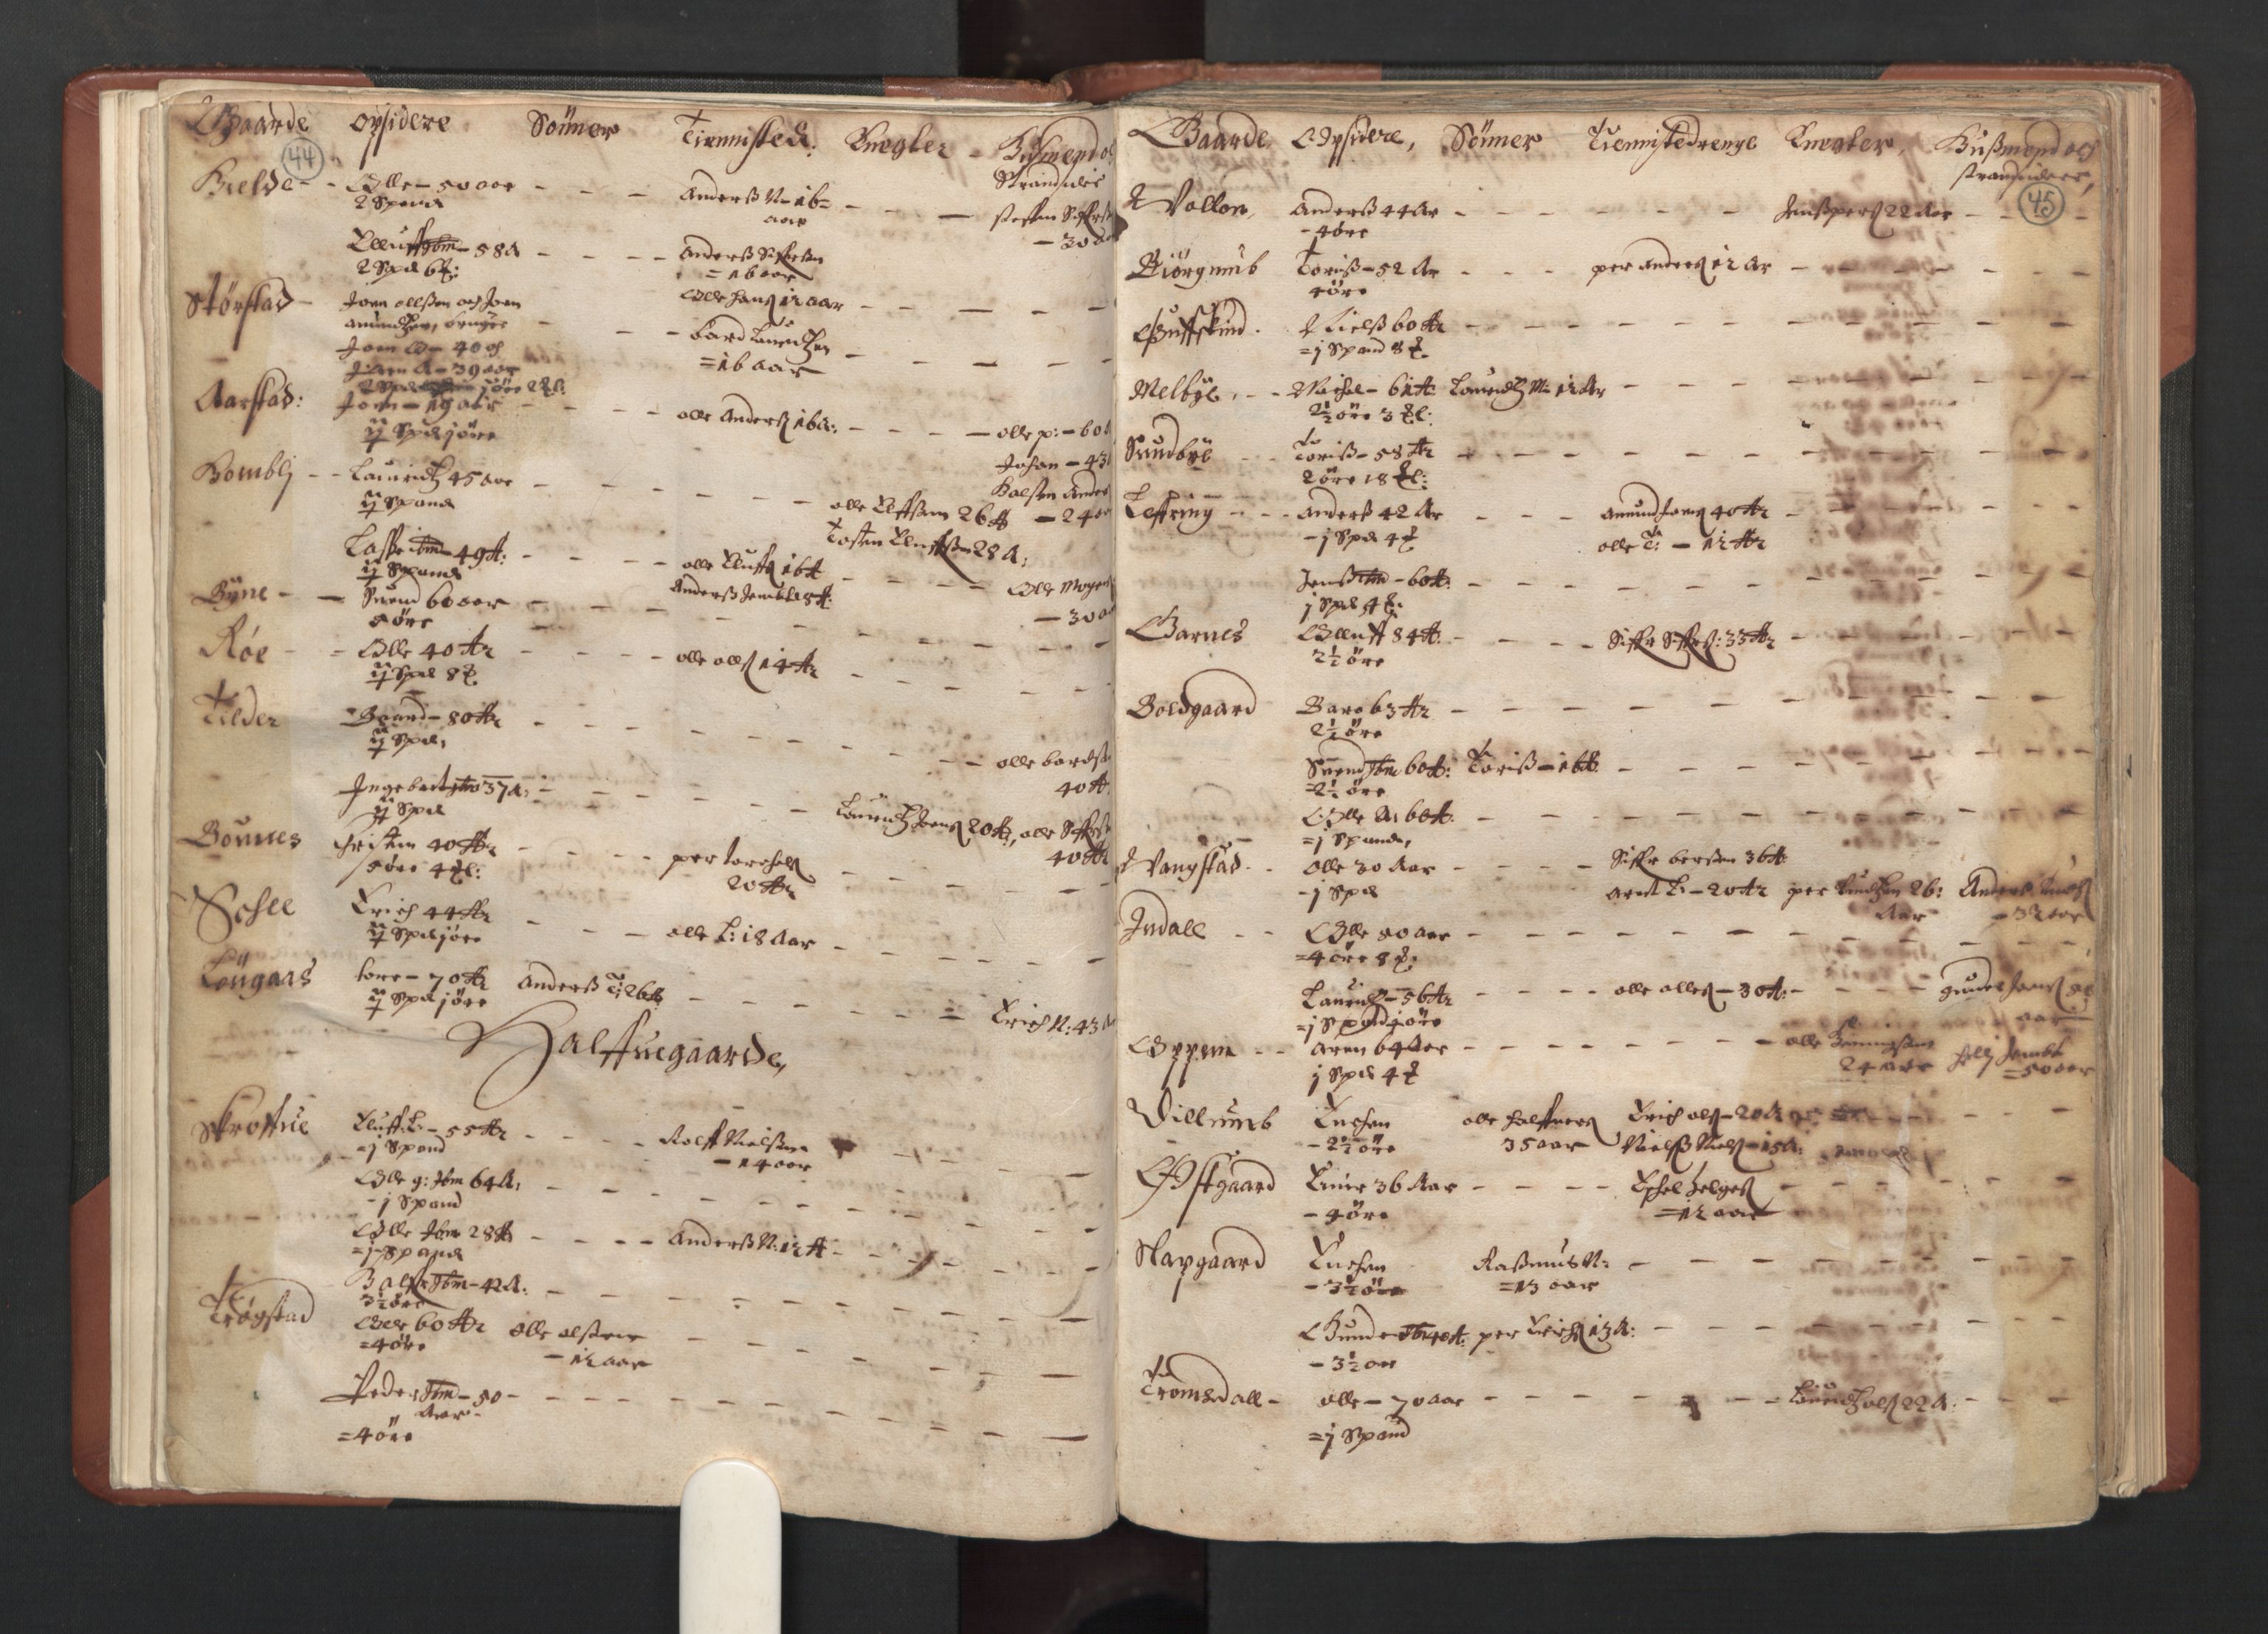 RA, Fogdenes og sorenskrivernes manntall 1664-1666, nr. 19: Fosen fogderi, Inderøy fogderi, Selbu fogderi, Namdal fogderi og Stjørdal fogderi, 1664-1665, s. 44-45